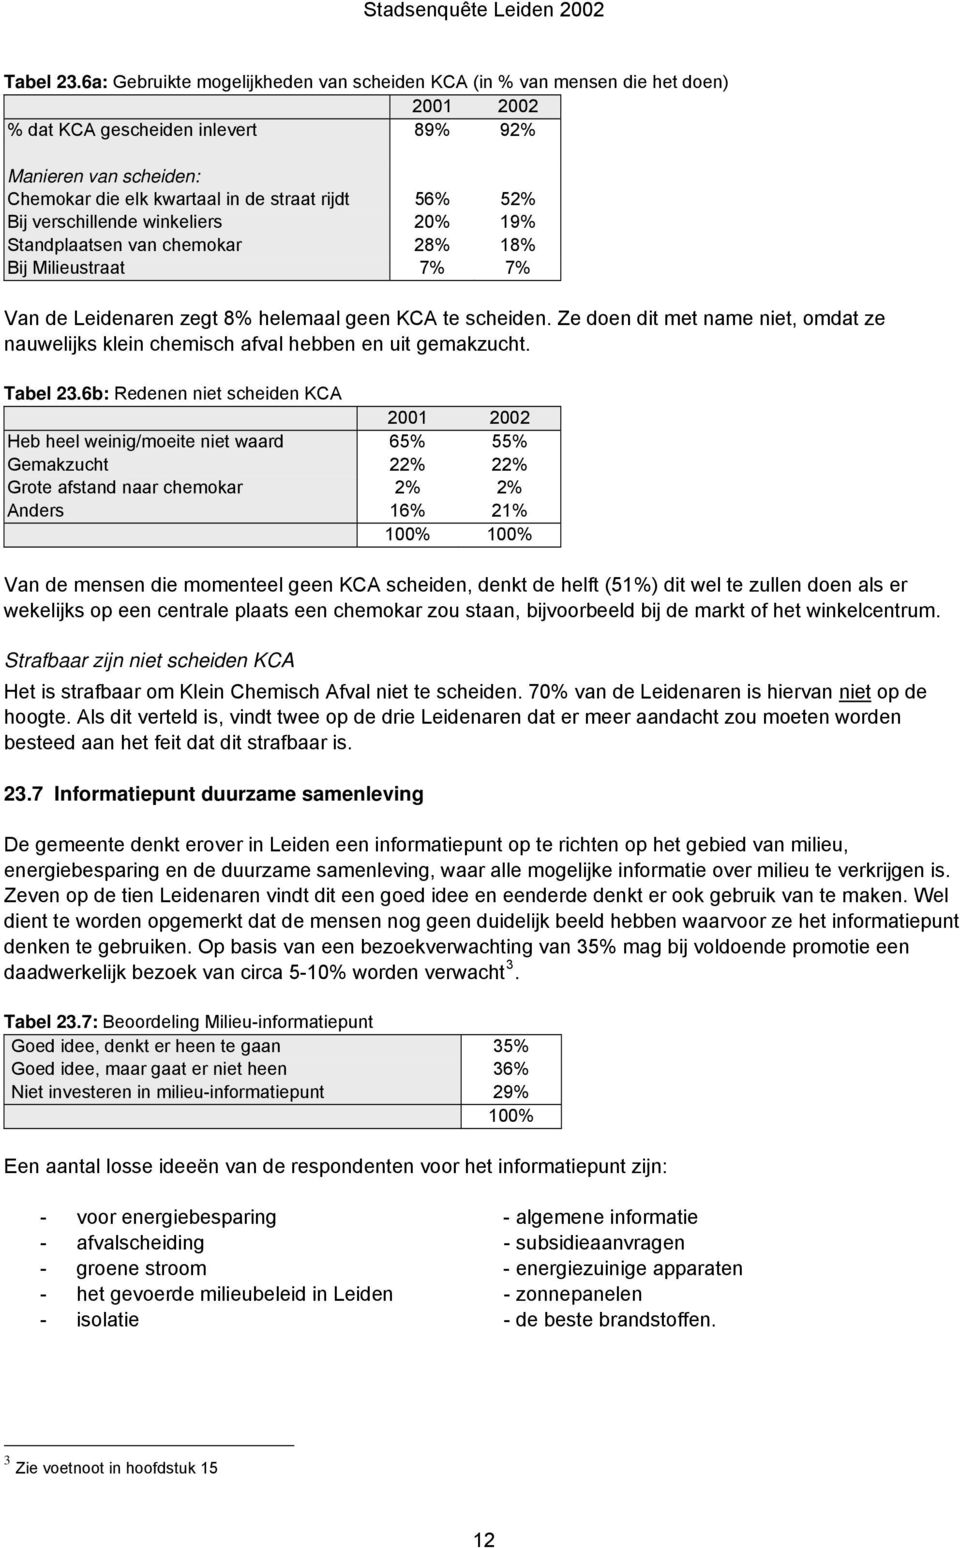 verschillende winkeliers 20% 19% Standplaatsen van chemokar 28% 18% Bij Milieustraat 7% 7% Van de Leidenaren zegt 8% helemaal geen KCA te scheiden.